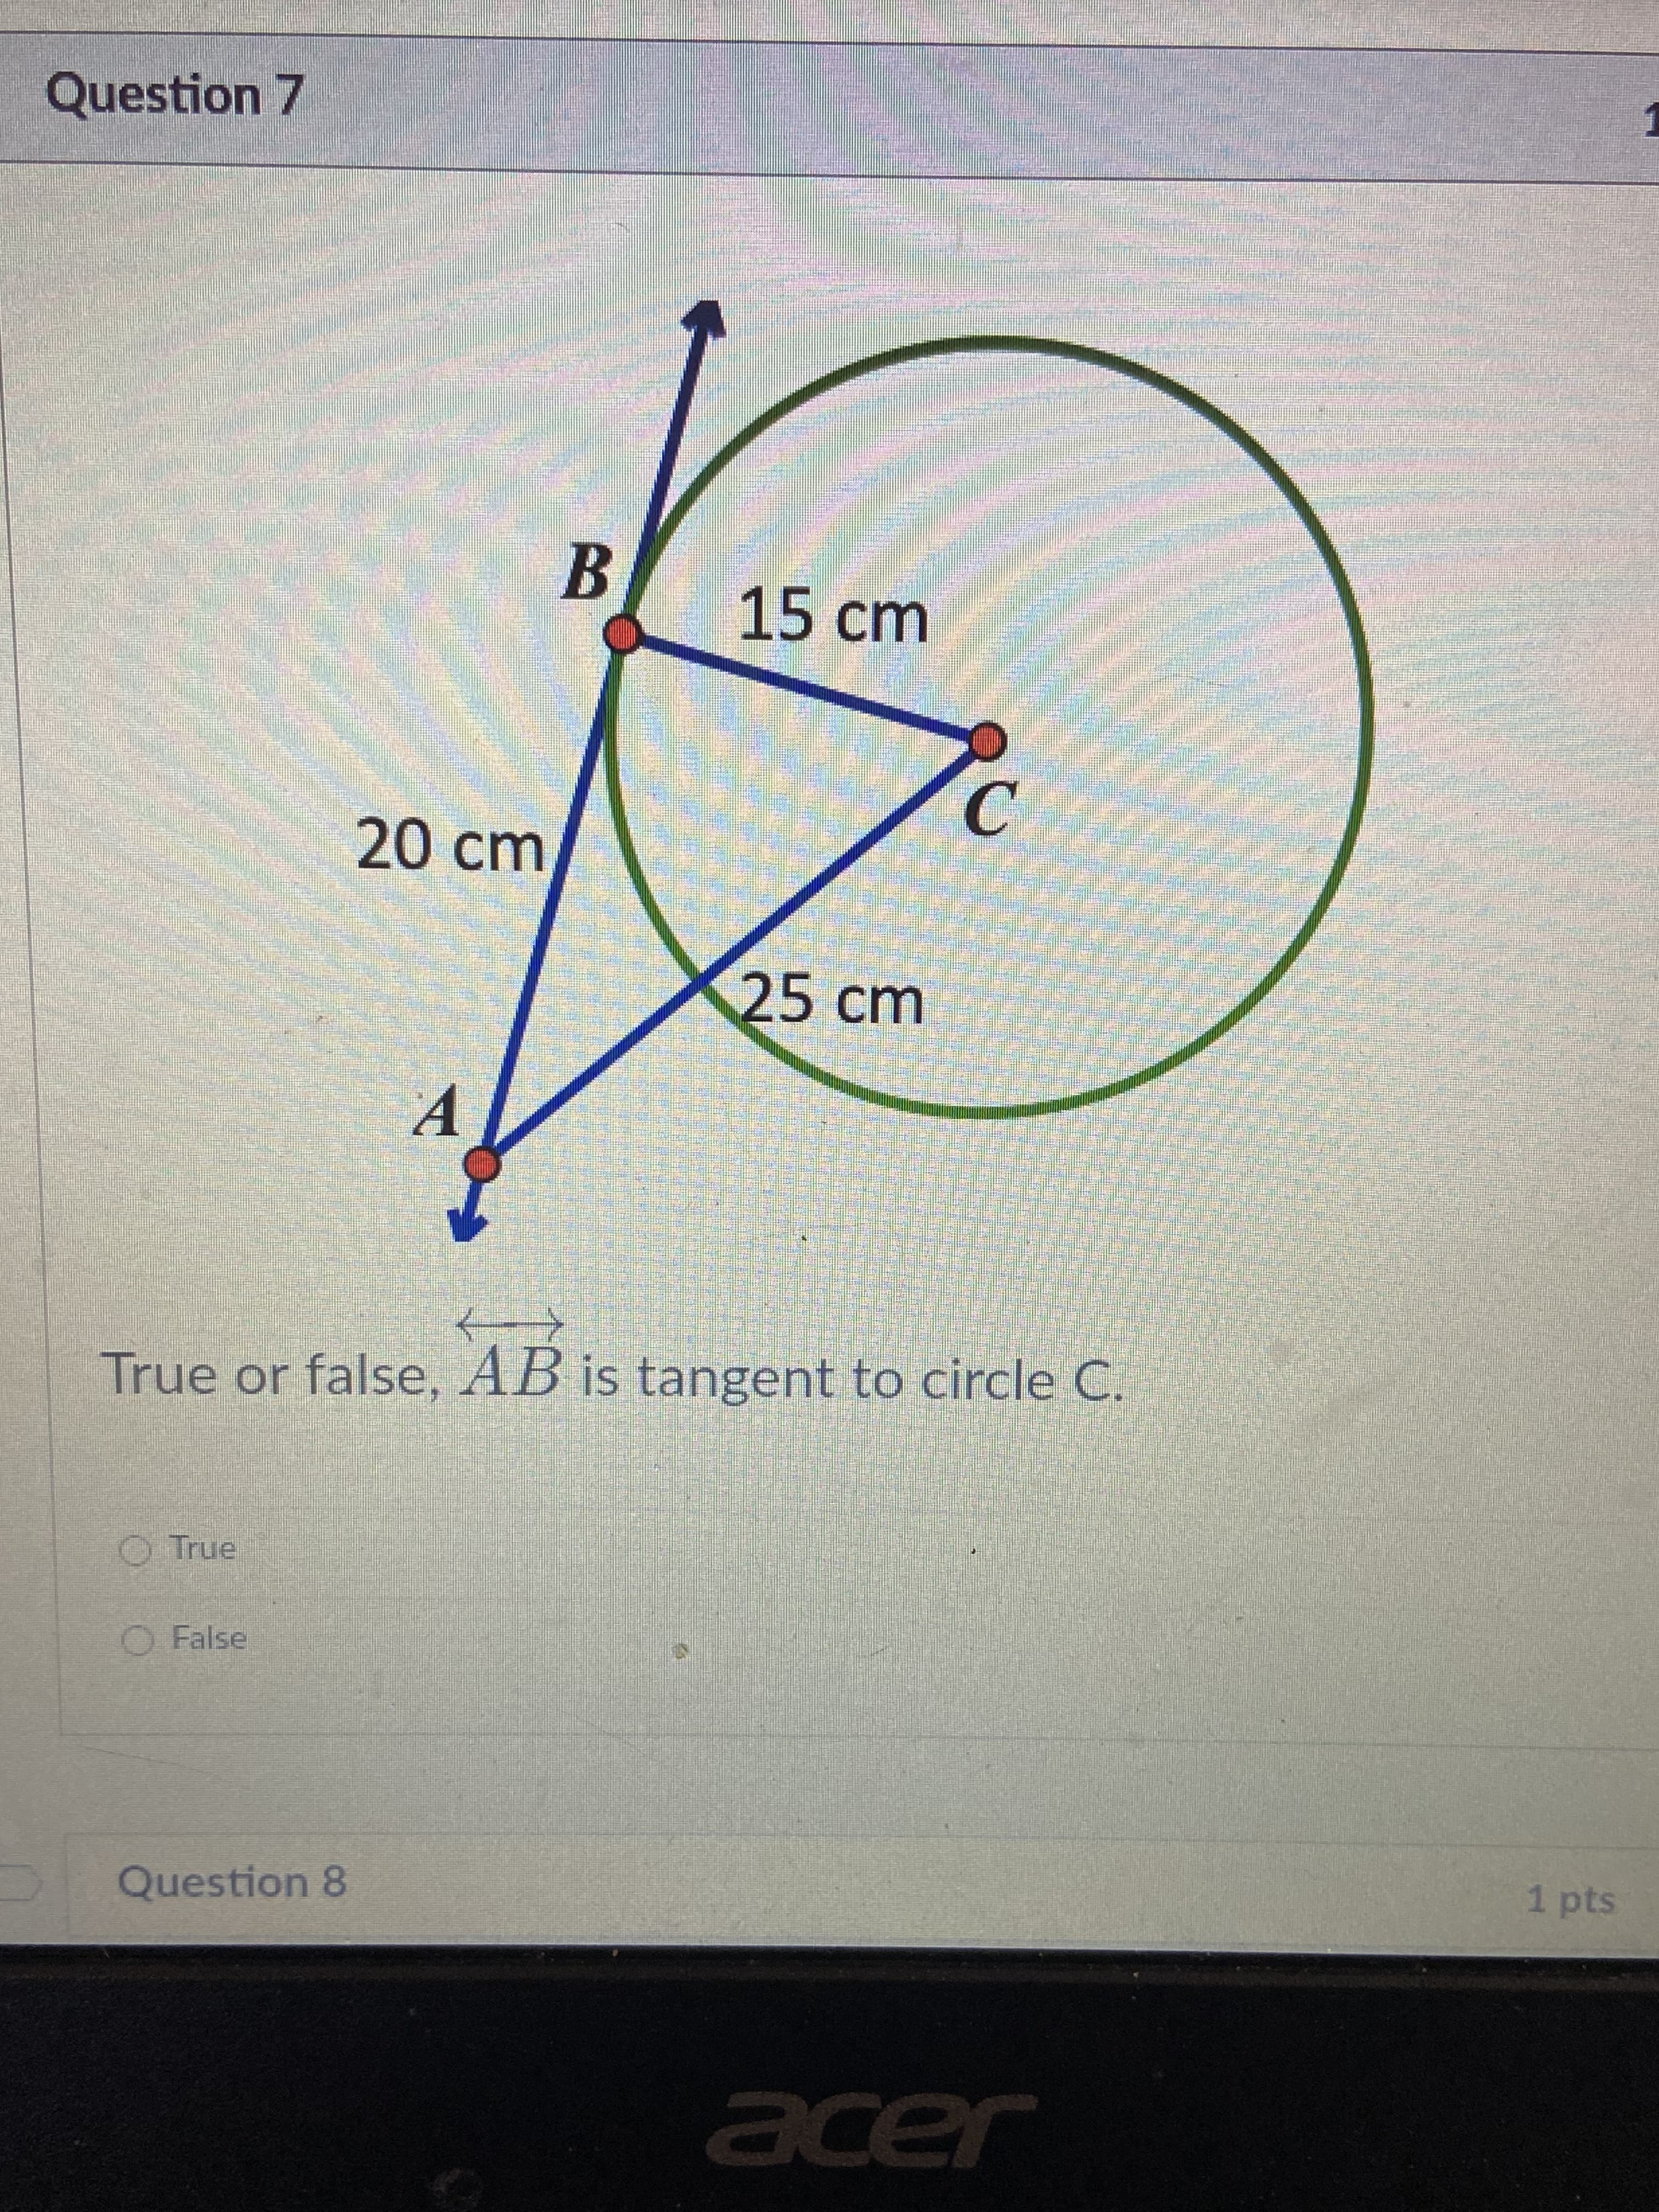 True or false, AB is tangent to circle C.
O True
O False
